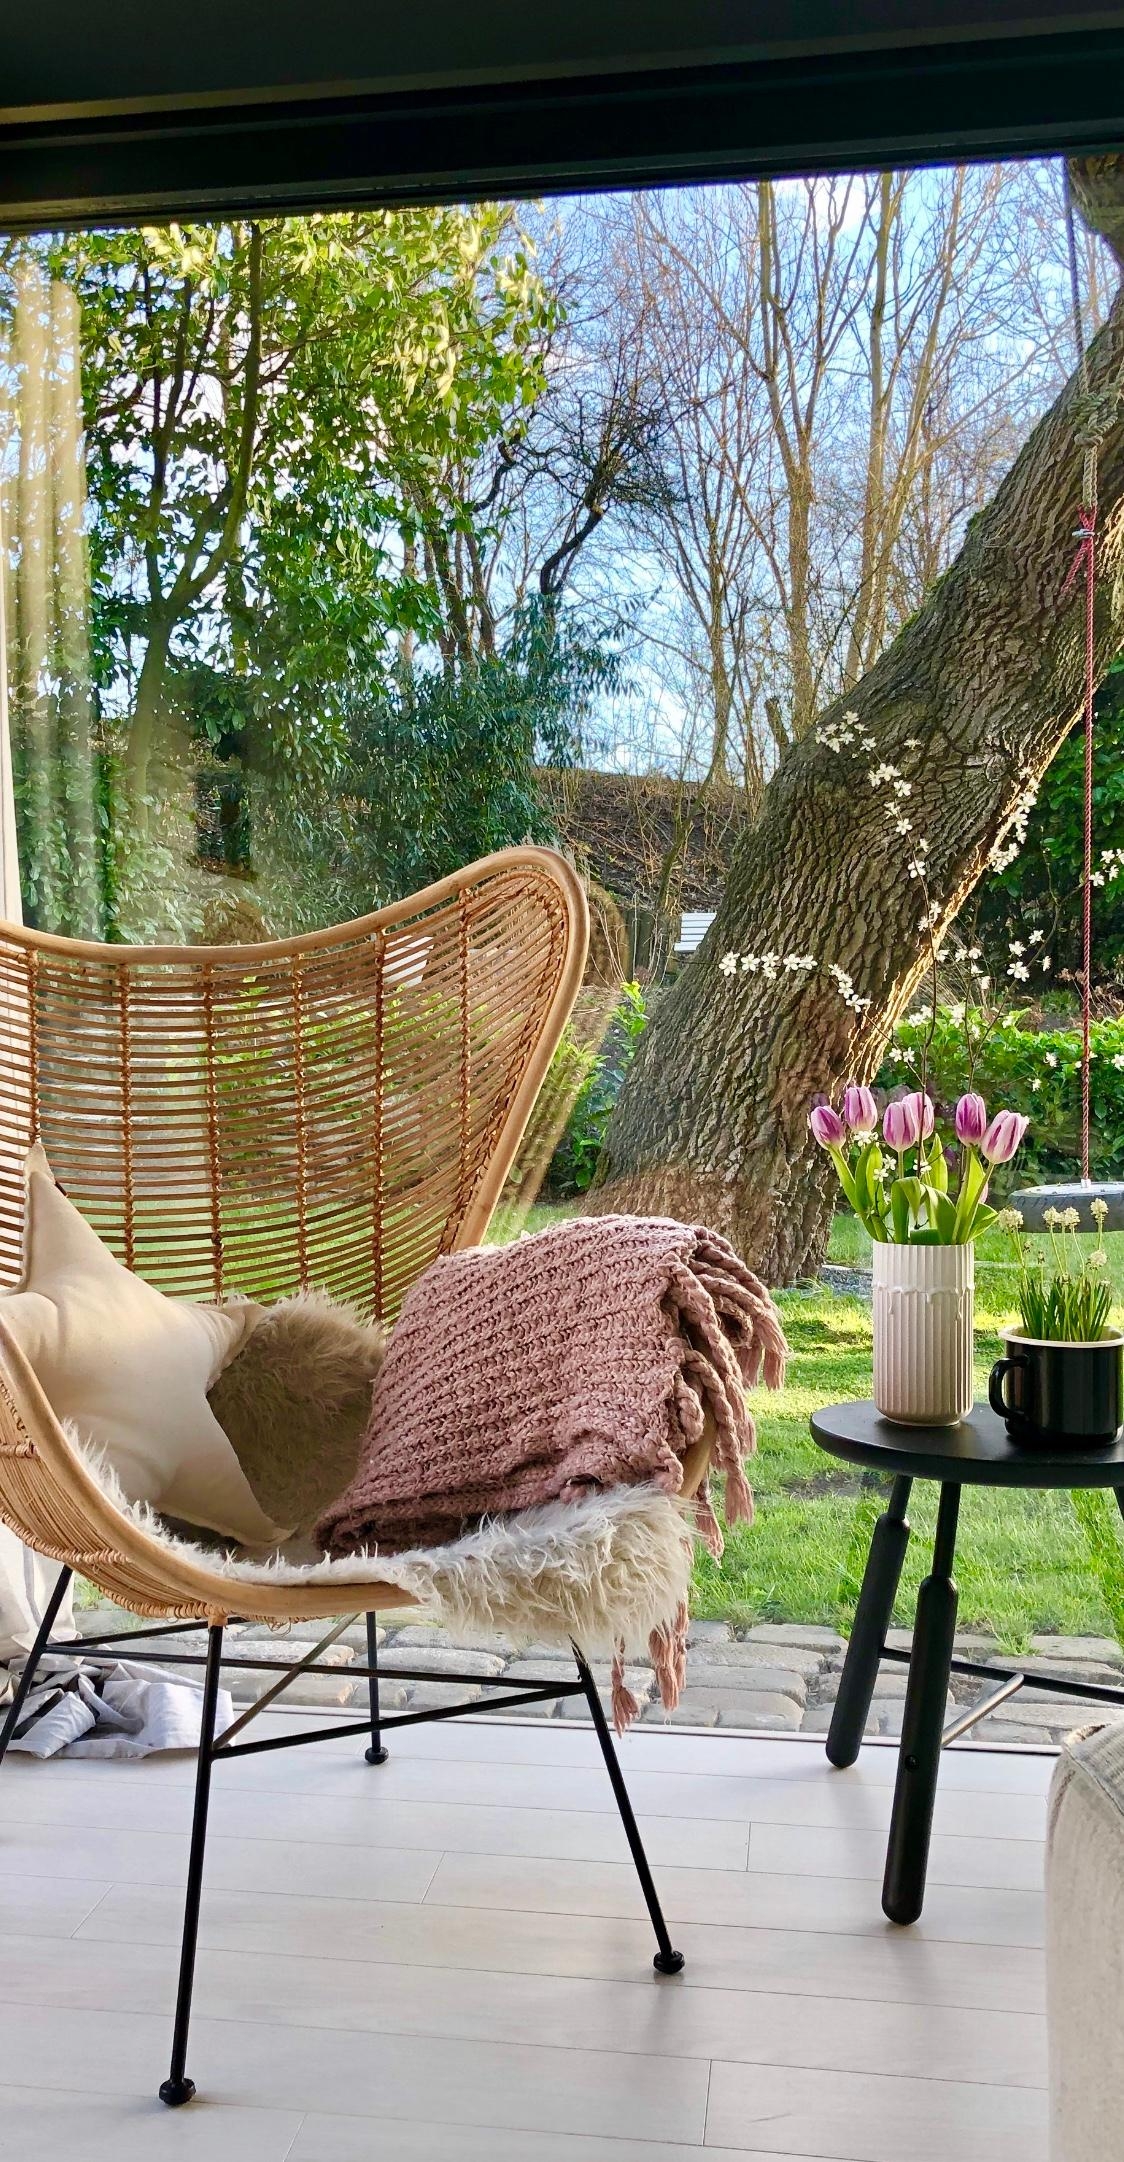 Überraschungstulpen...aus zartrosa wird lila 🤷🏼‍♀️
#couchstyle